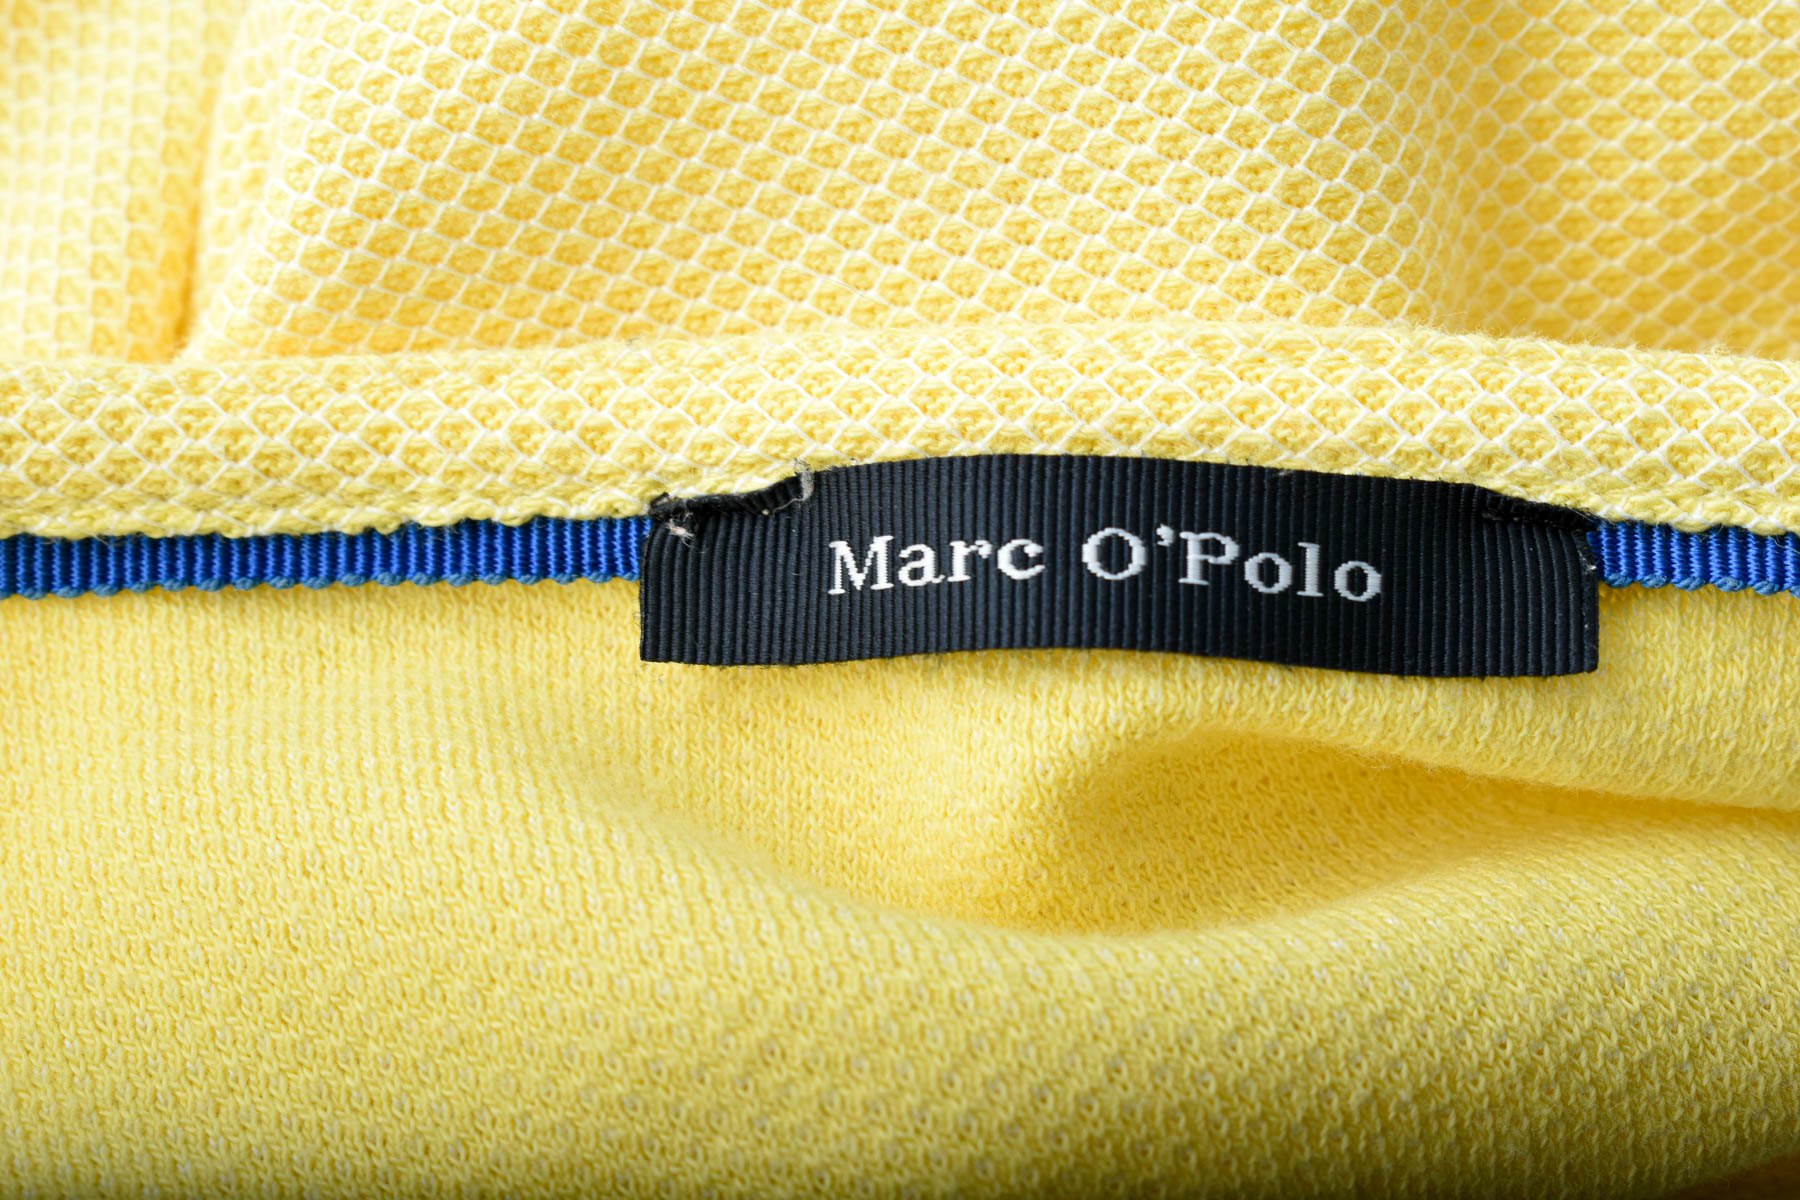 Women's blouse - MARCO POLO - 2